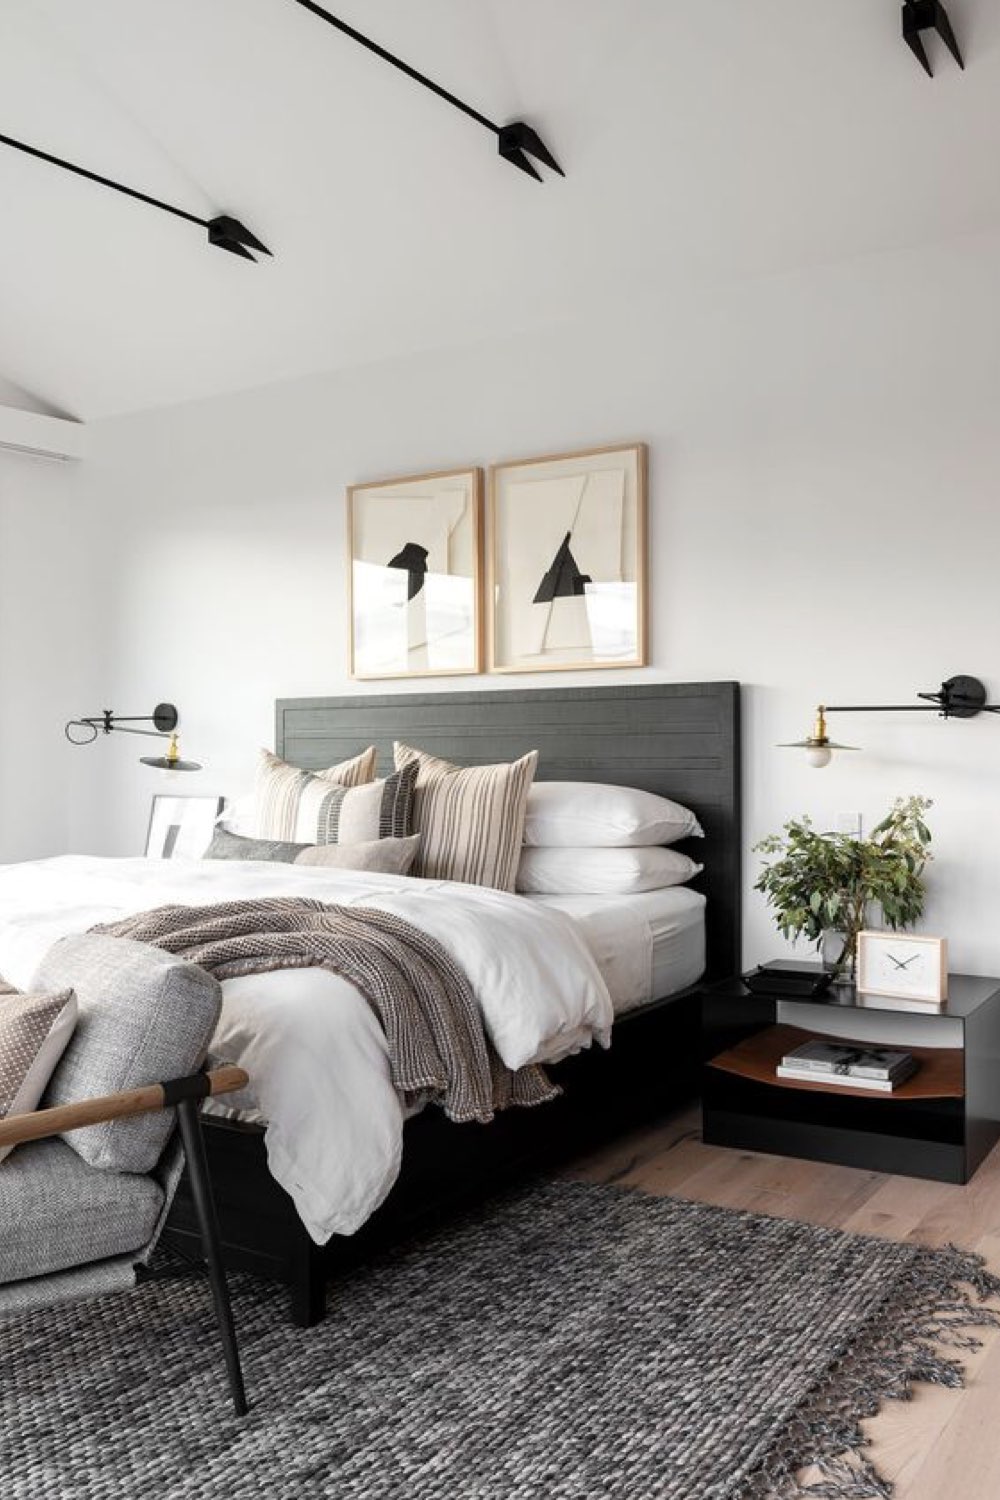 reussir decoration chambre adulte chic et élégante épurée tête de lit tissus gris tapis descente de lit applique murale orientable noir